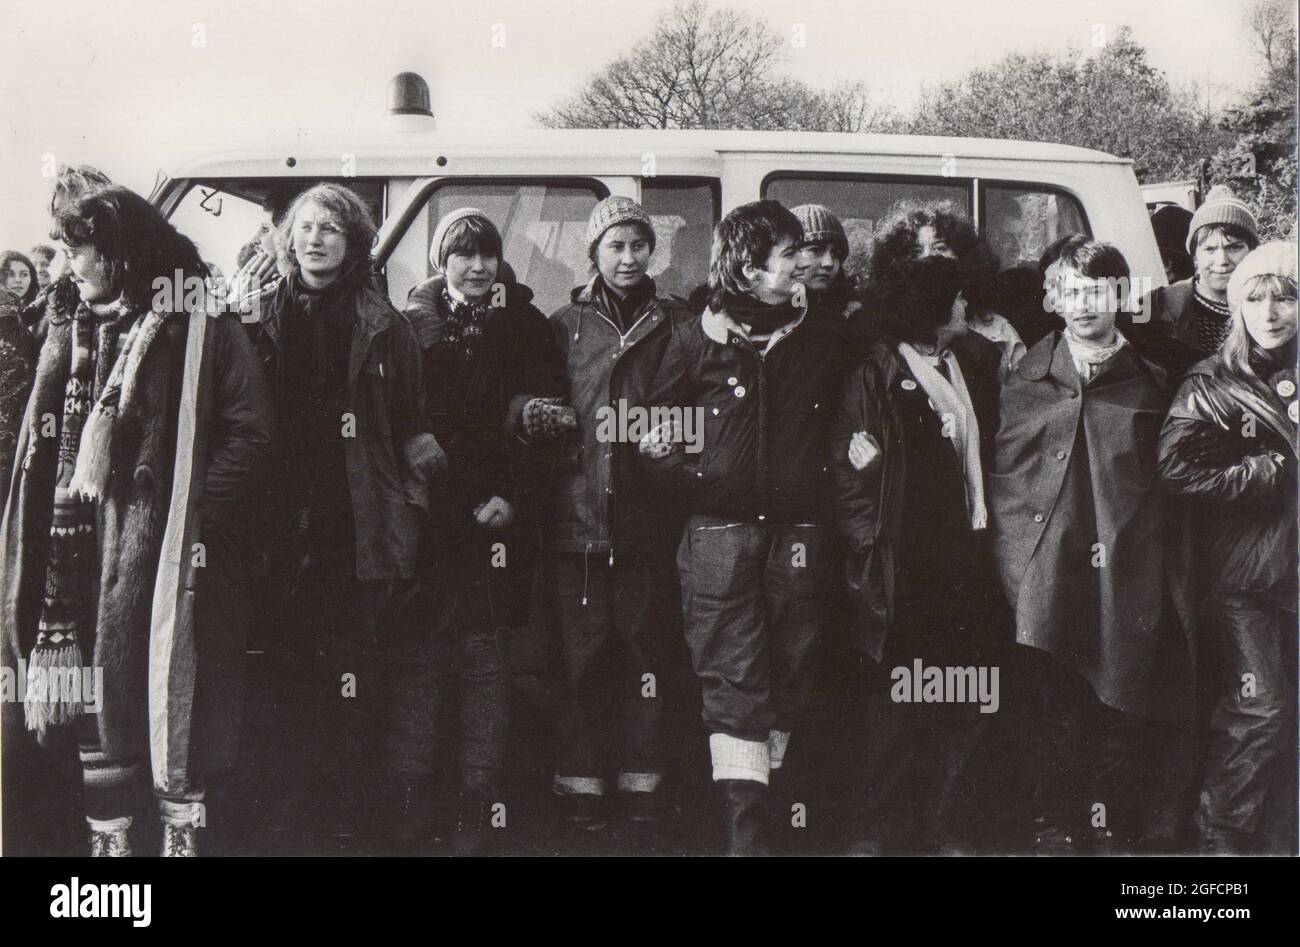 1983 Mujeres del Campamento Común de Paz de Greenham obstruyendo una furgoneta de policía, parte de su desobediencia civil no violenta para detener los misiles US Cruise en el Reino Unido Foto de stock